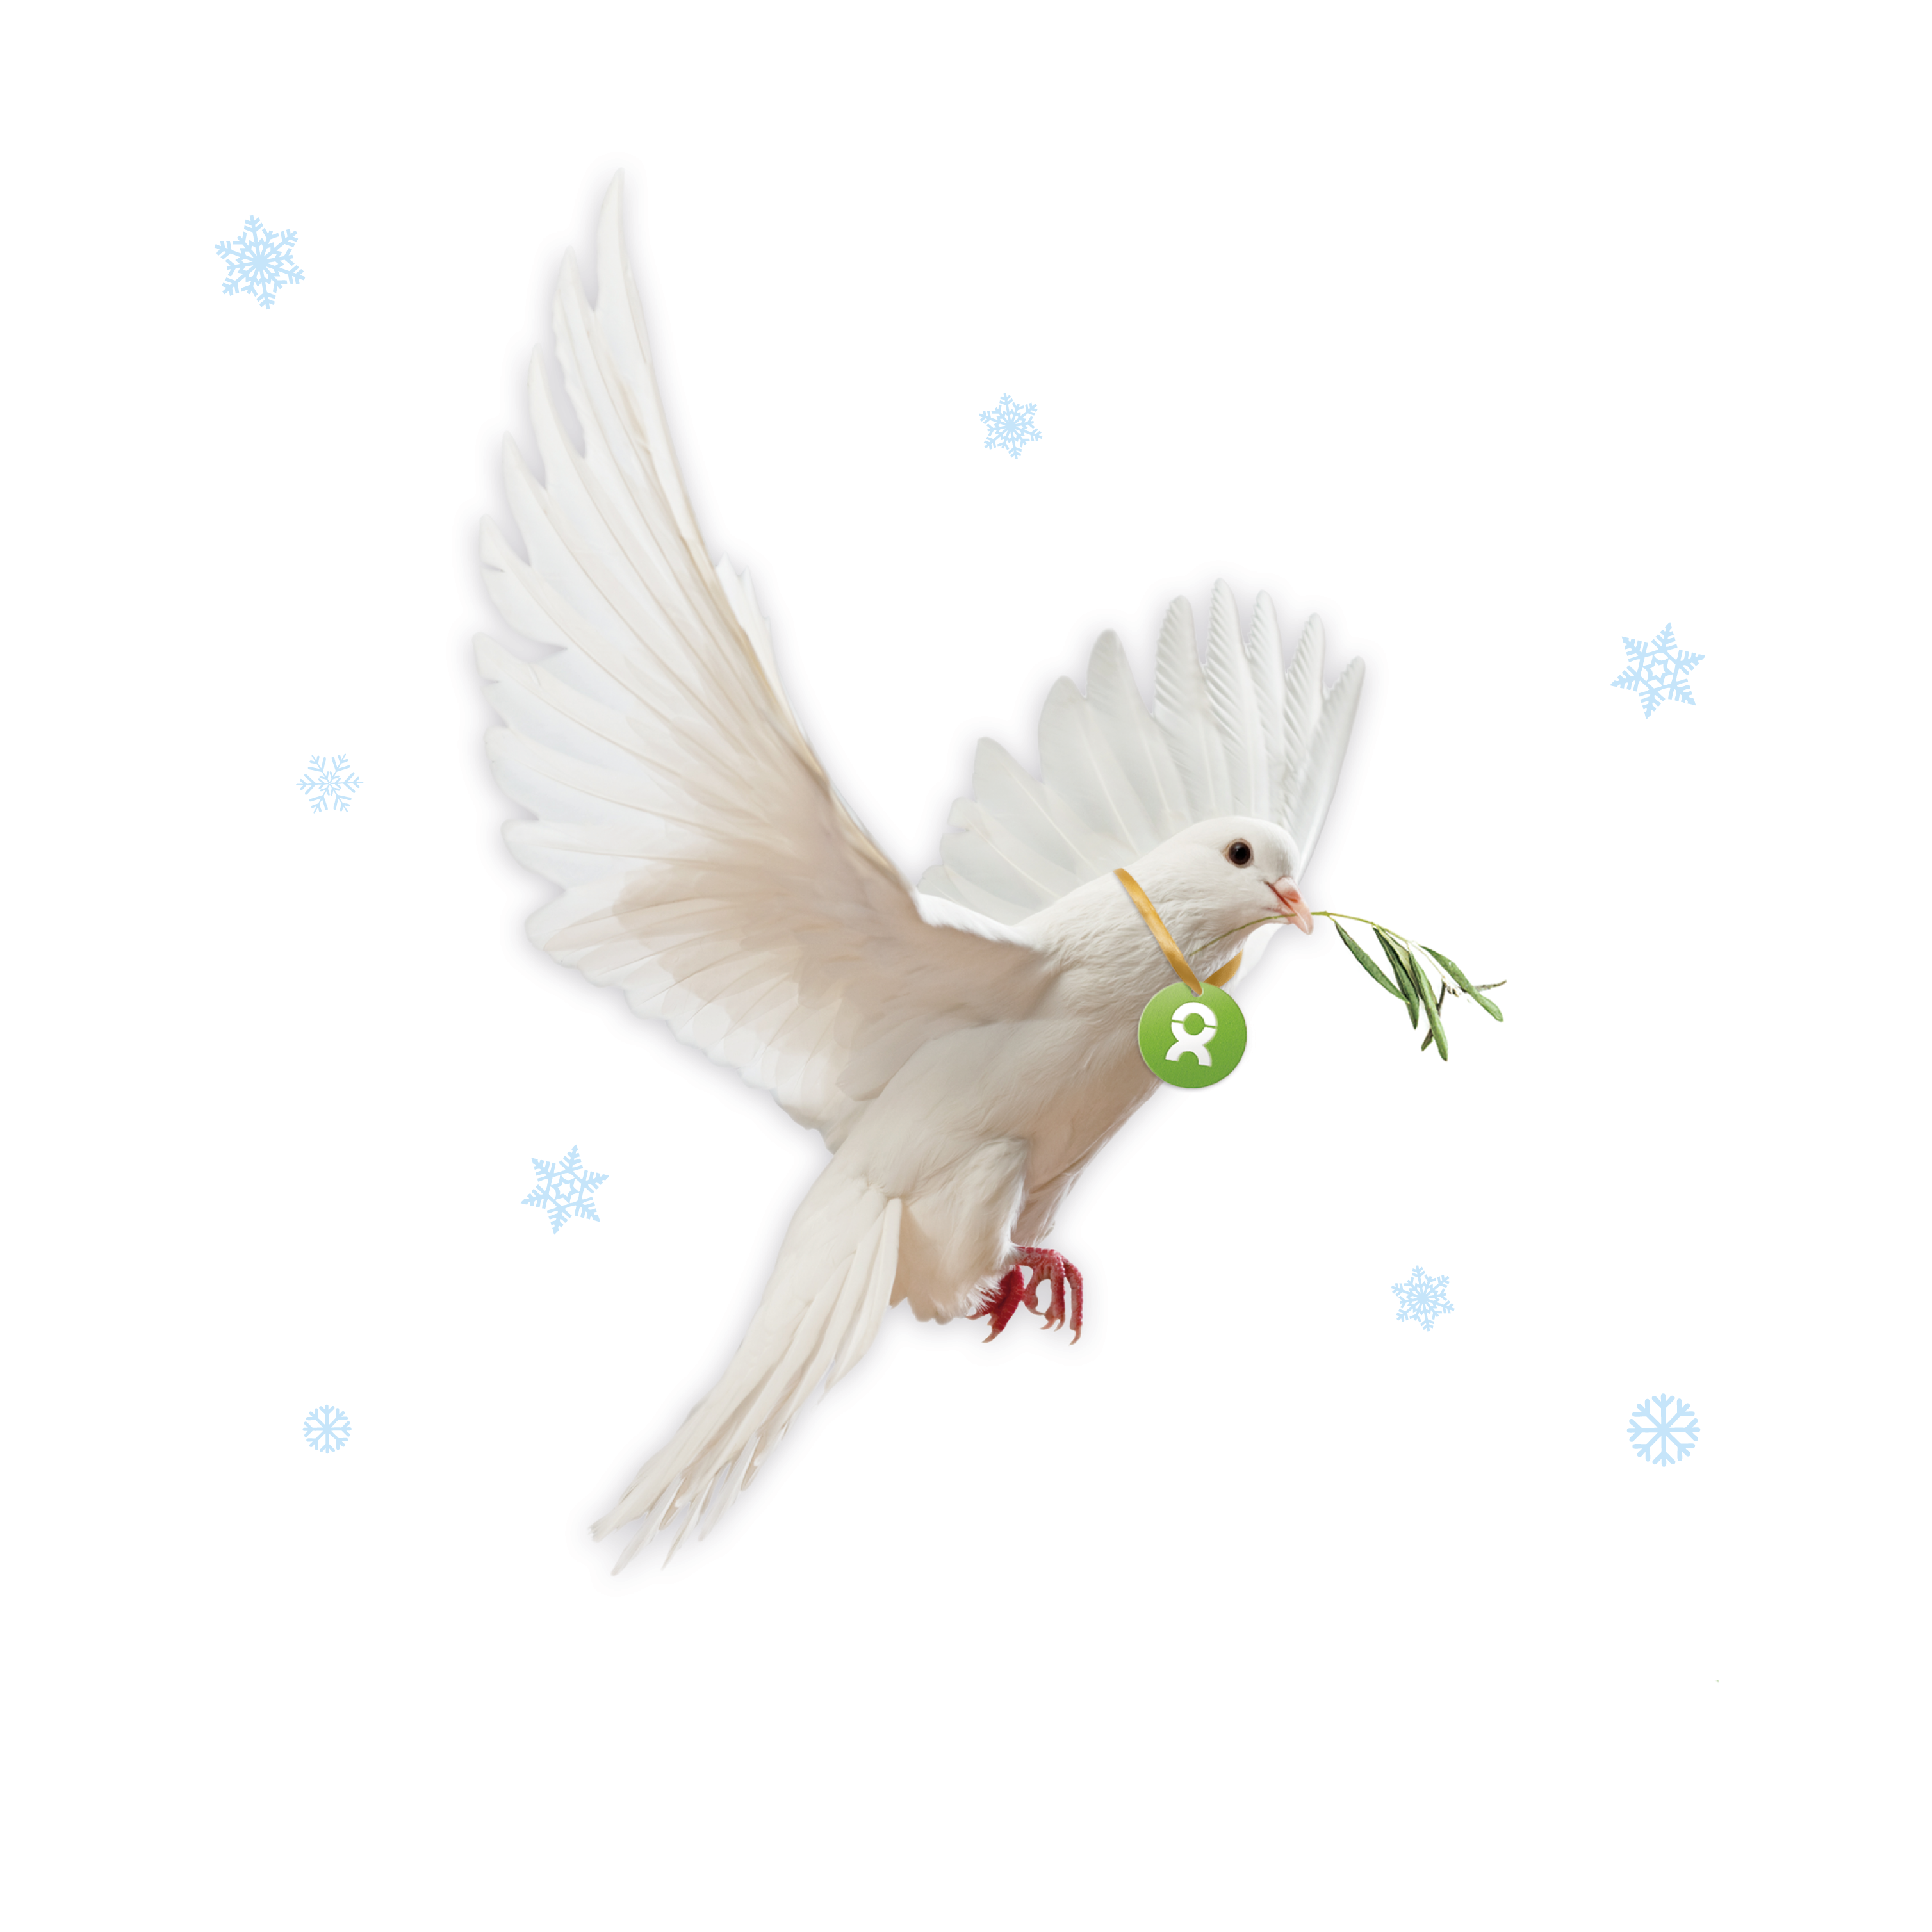 Beispiel Geschenk Spende Weihnachten Frieden: Grafik einer weißen Taube, die einen Olivenzweig im Schnabel trägt